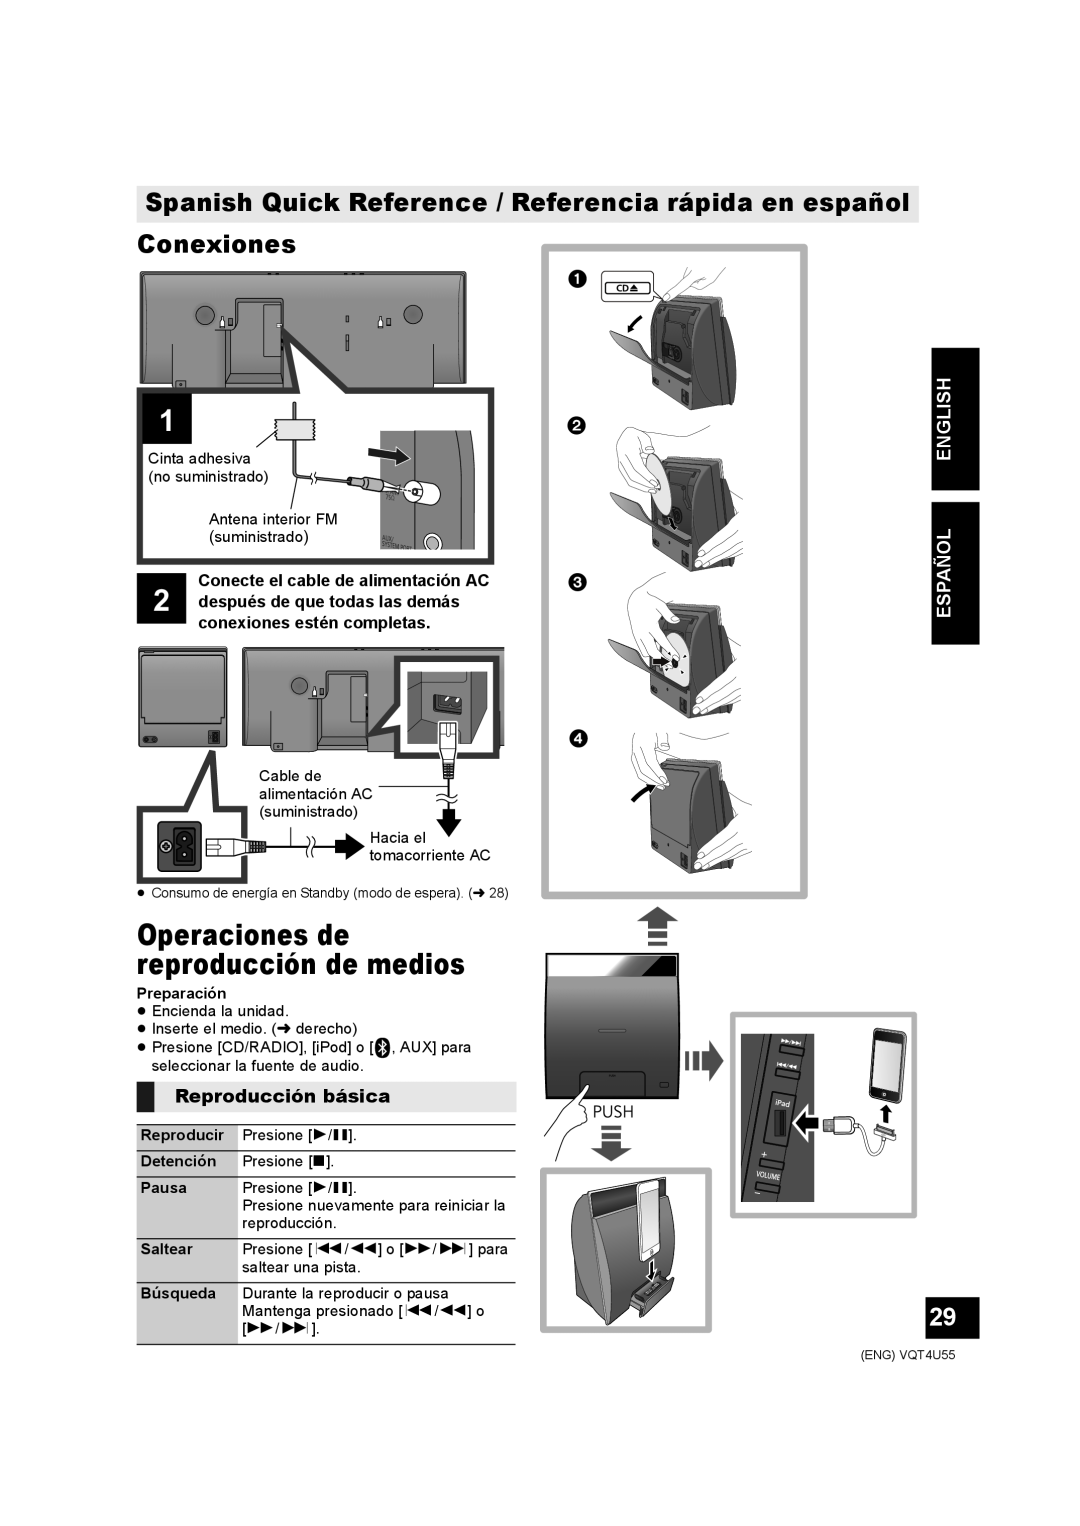 Panasonic SC-NE5 owner manual Conexiones, Operaciones de reproducción de medios, Reproducción básica, Español English 